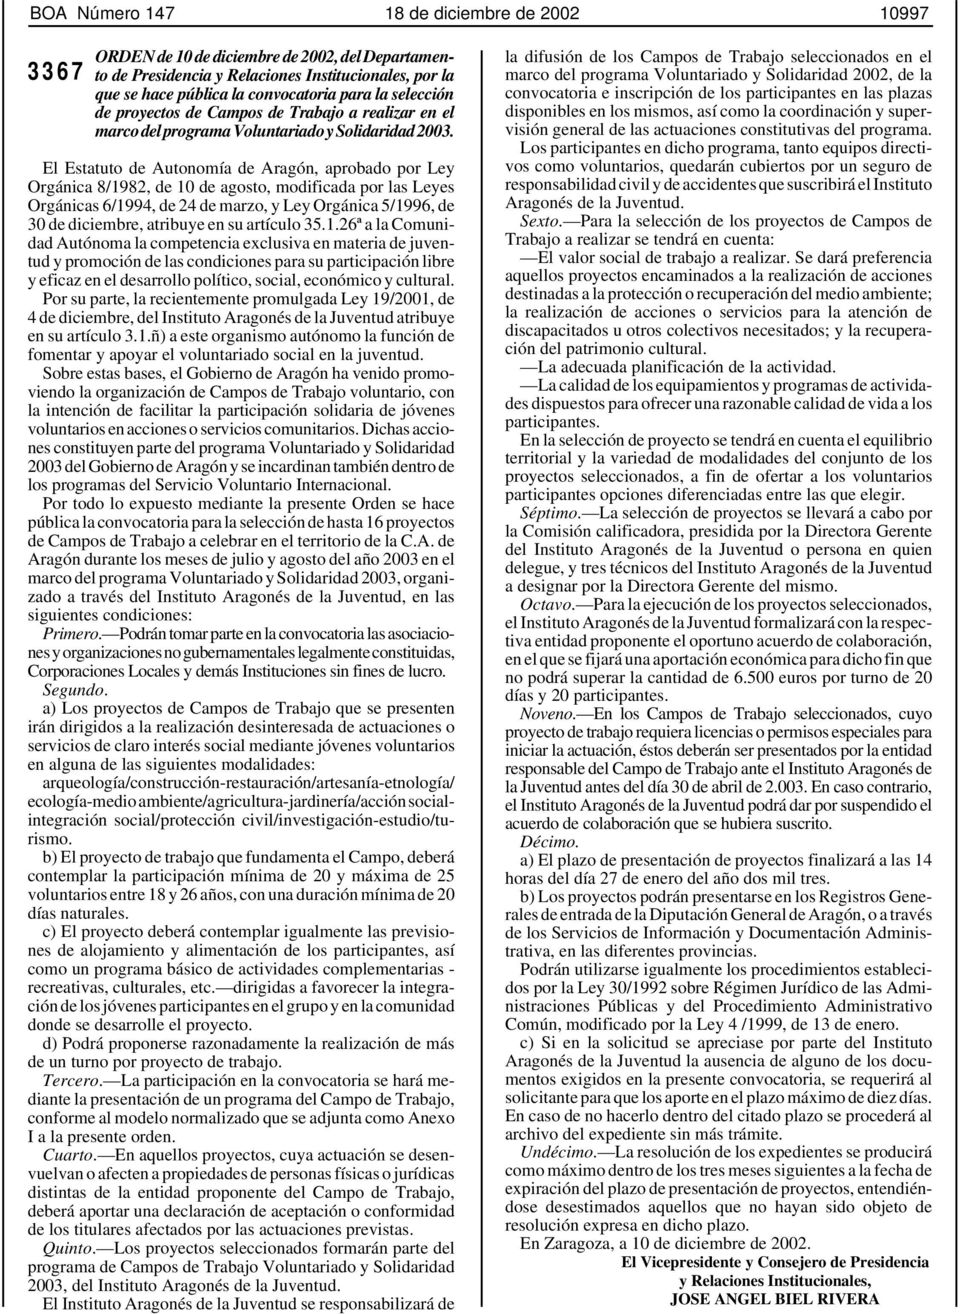 $ El Estatuto de Autonomía de Aragón, aprobado por Ley Orgánica 8/1982, de 10 de agosto, modificada por las Leyes Orgánicas 6/1994, de 24 de marzo, y Ley Orgánica 5/1996, de 30 de diciembre, atribuye